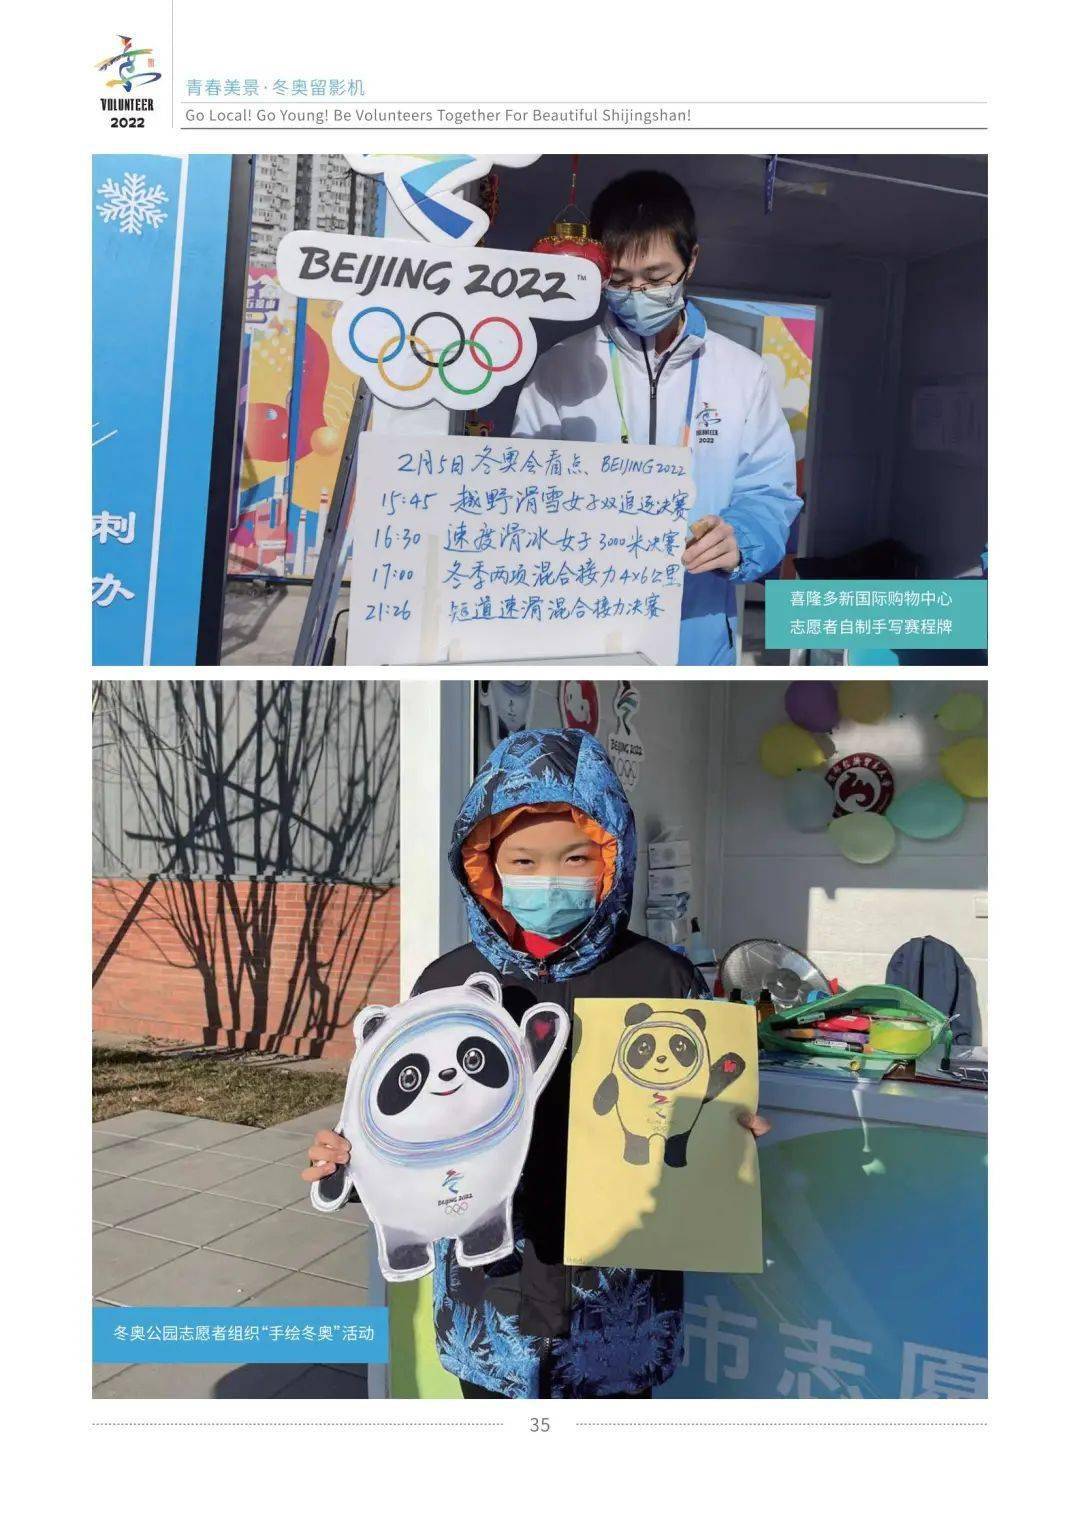 北京冬奥志愿者卡通图片